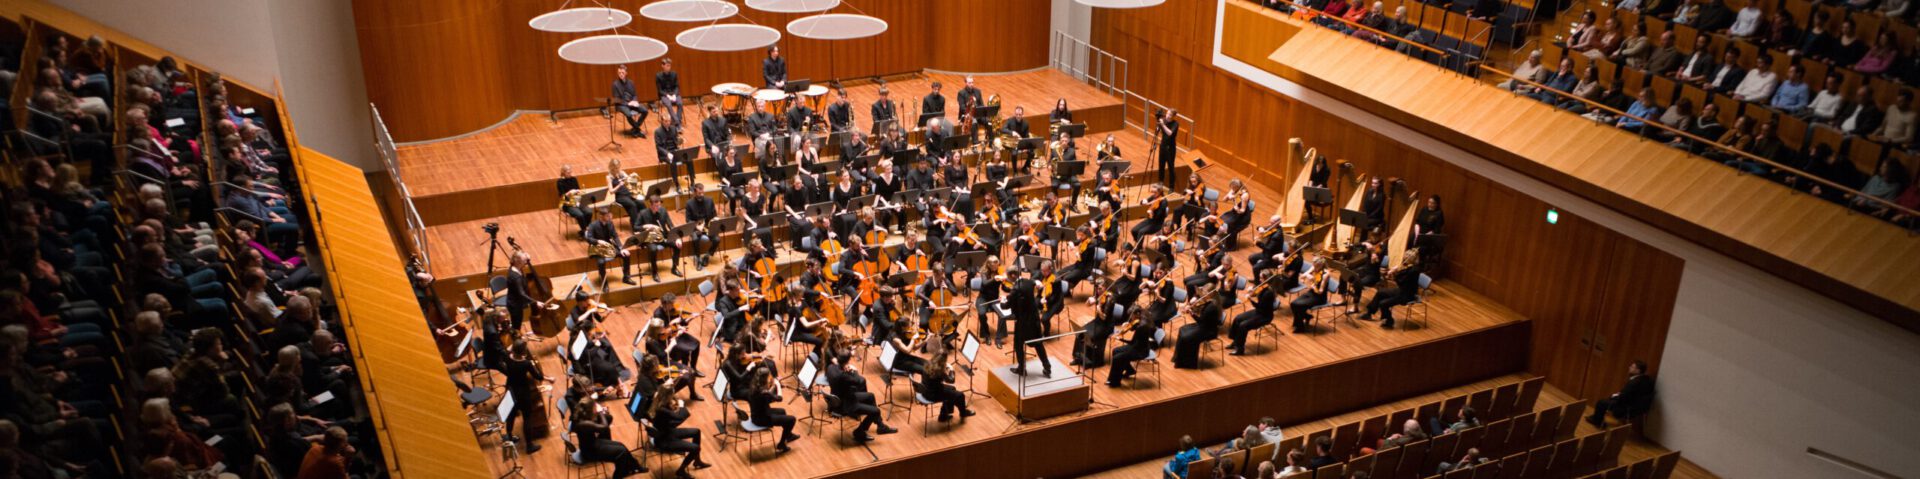 KHG-Orchester Freiburg